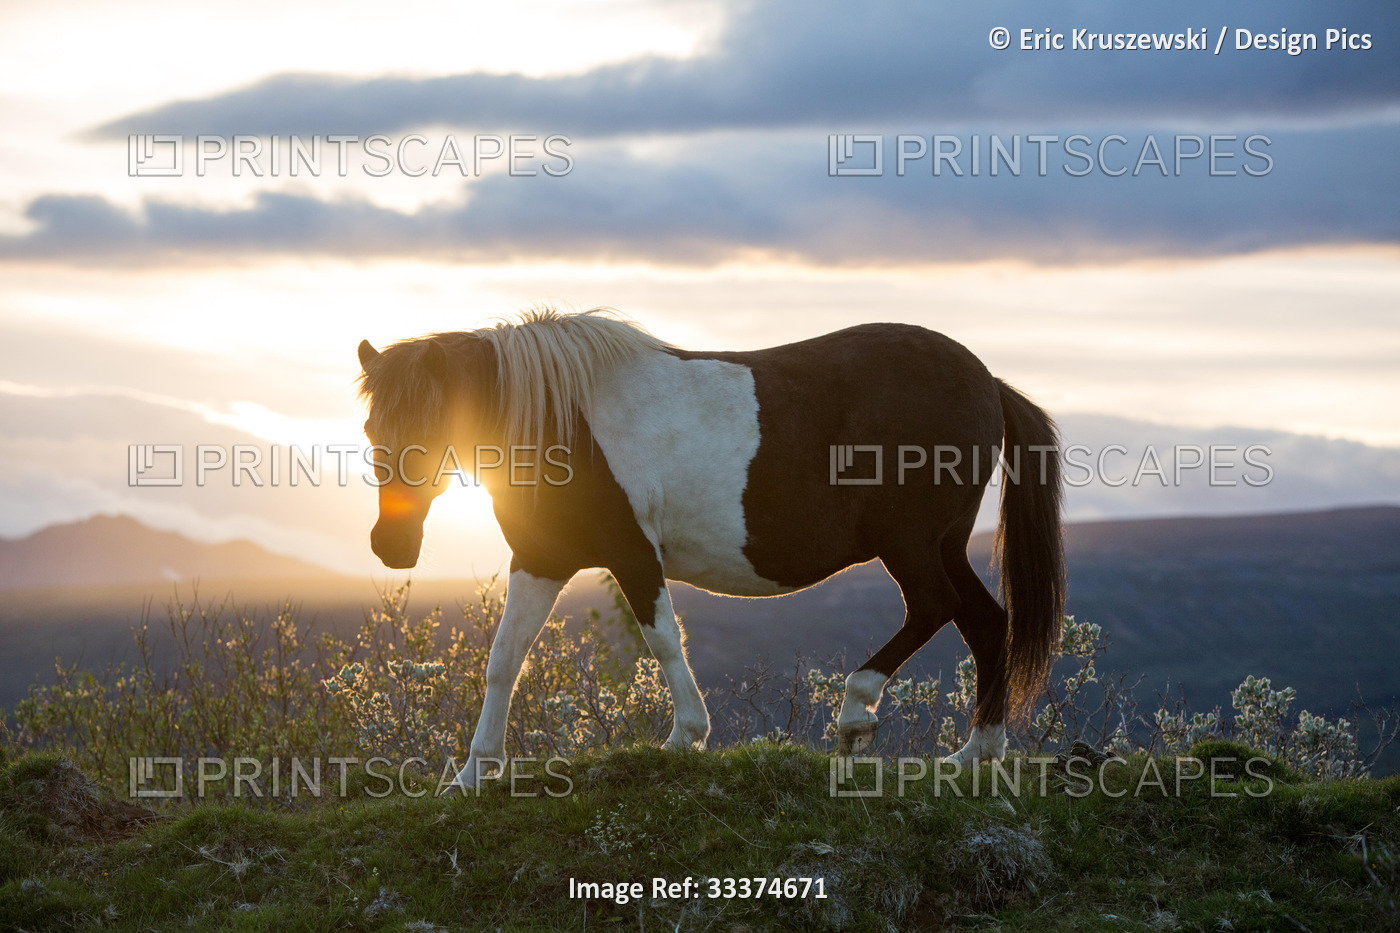 An Icelandic horse stands in a field as the sun sets.; Gljasteinn, Iceland